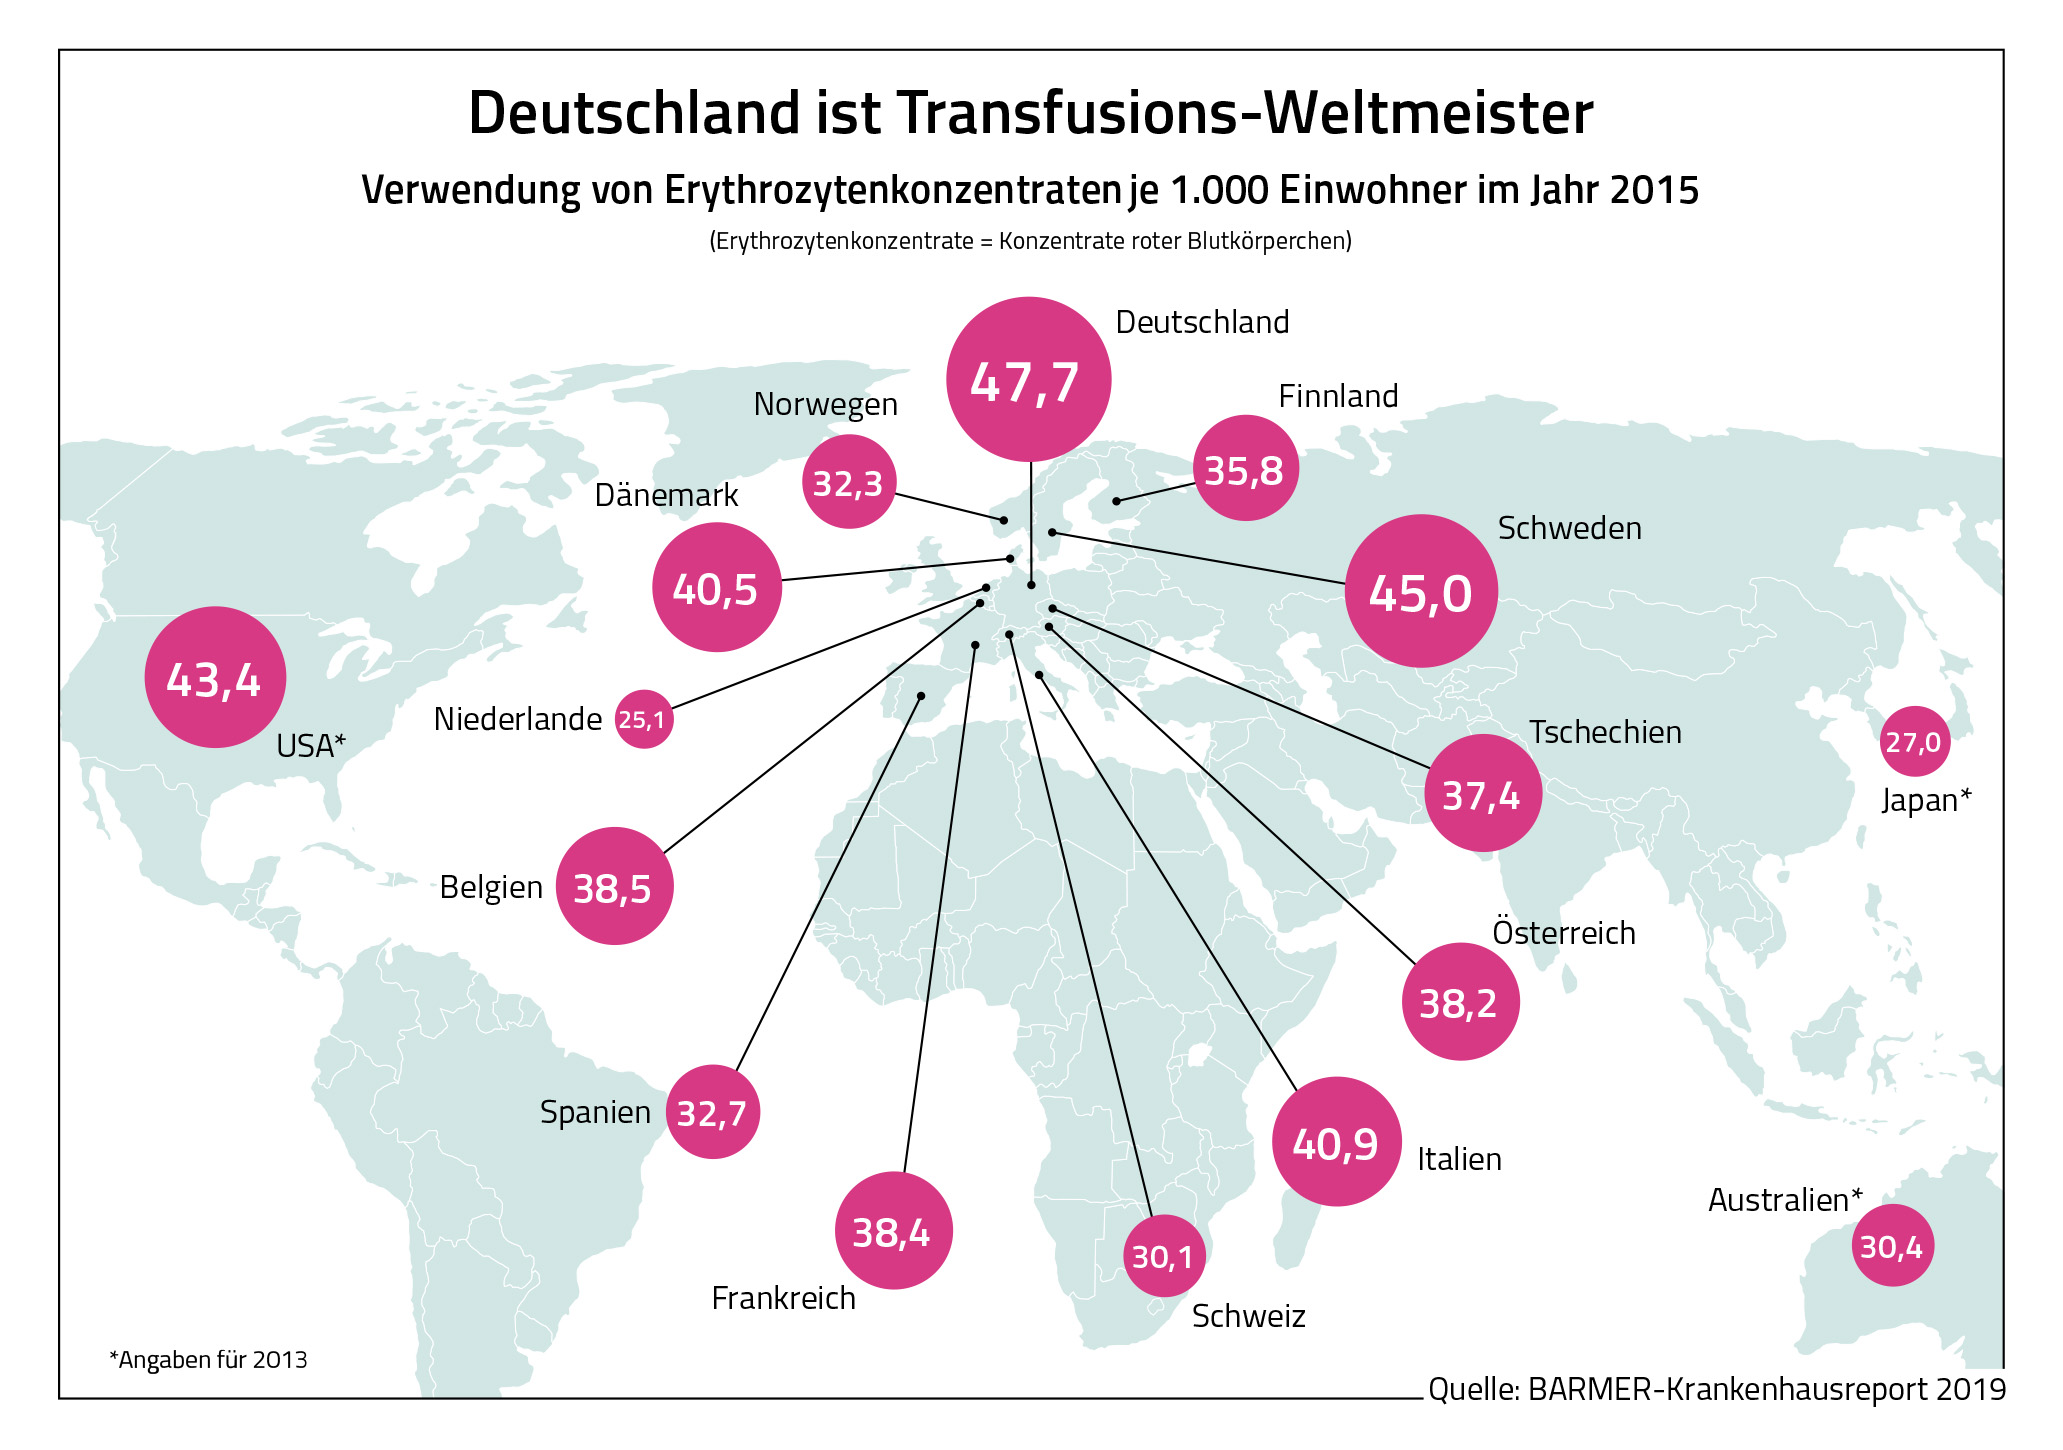 Diese Grafik zeigt, dass Deutschland weltweit die größte Zahl an Transfusionen im Jahr 2015 vorweist.